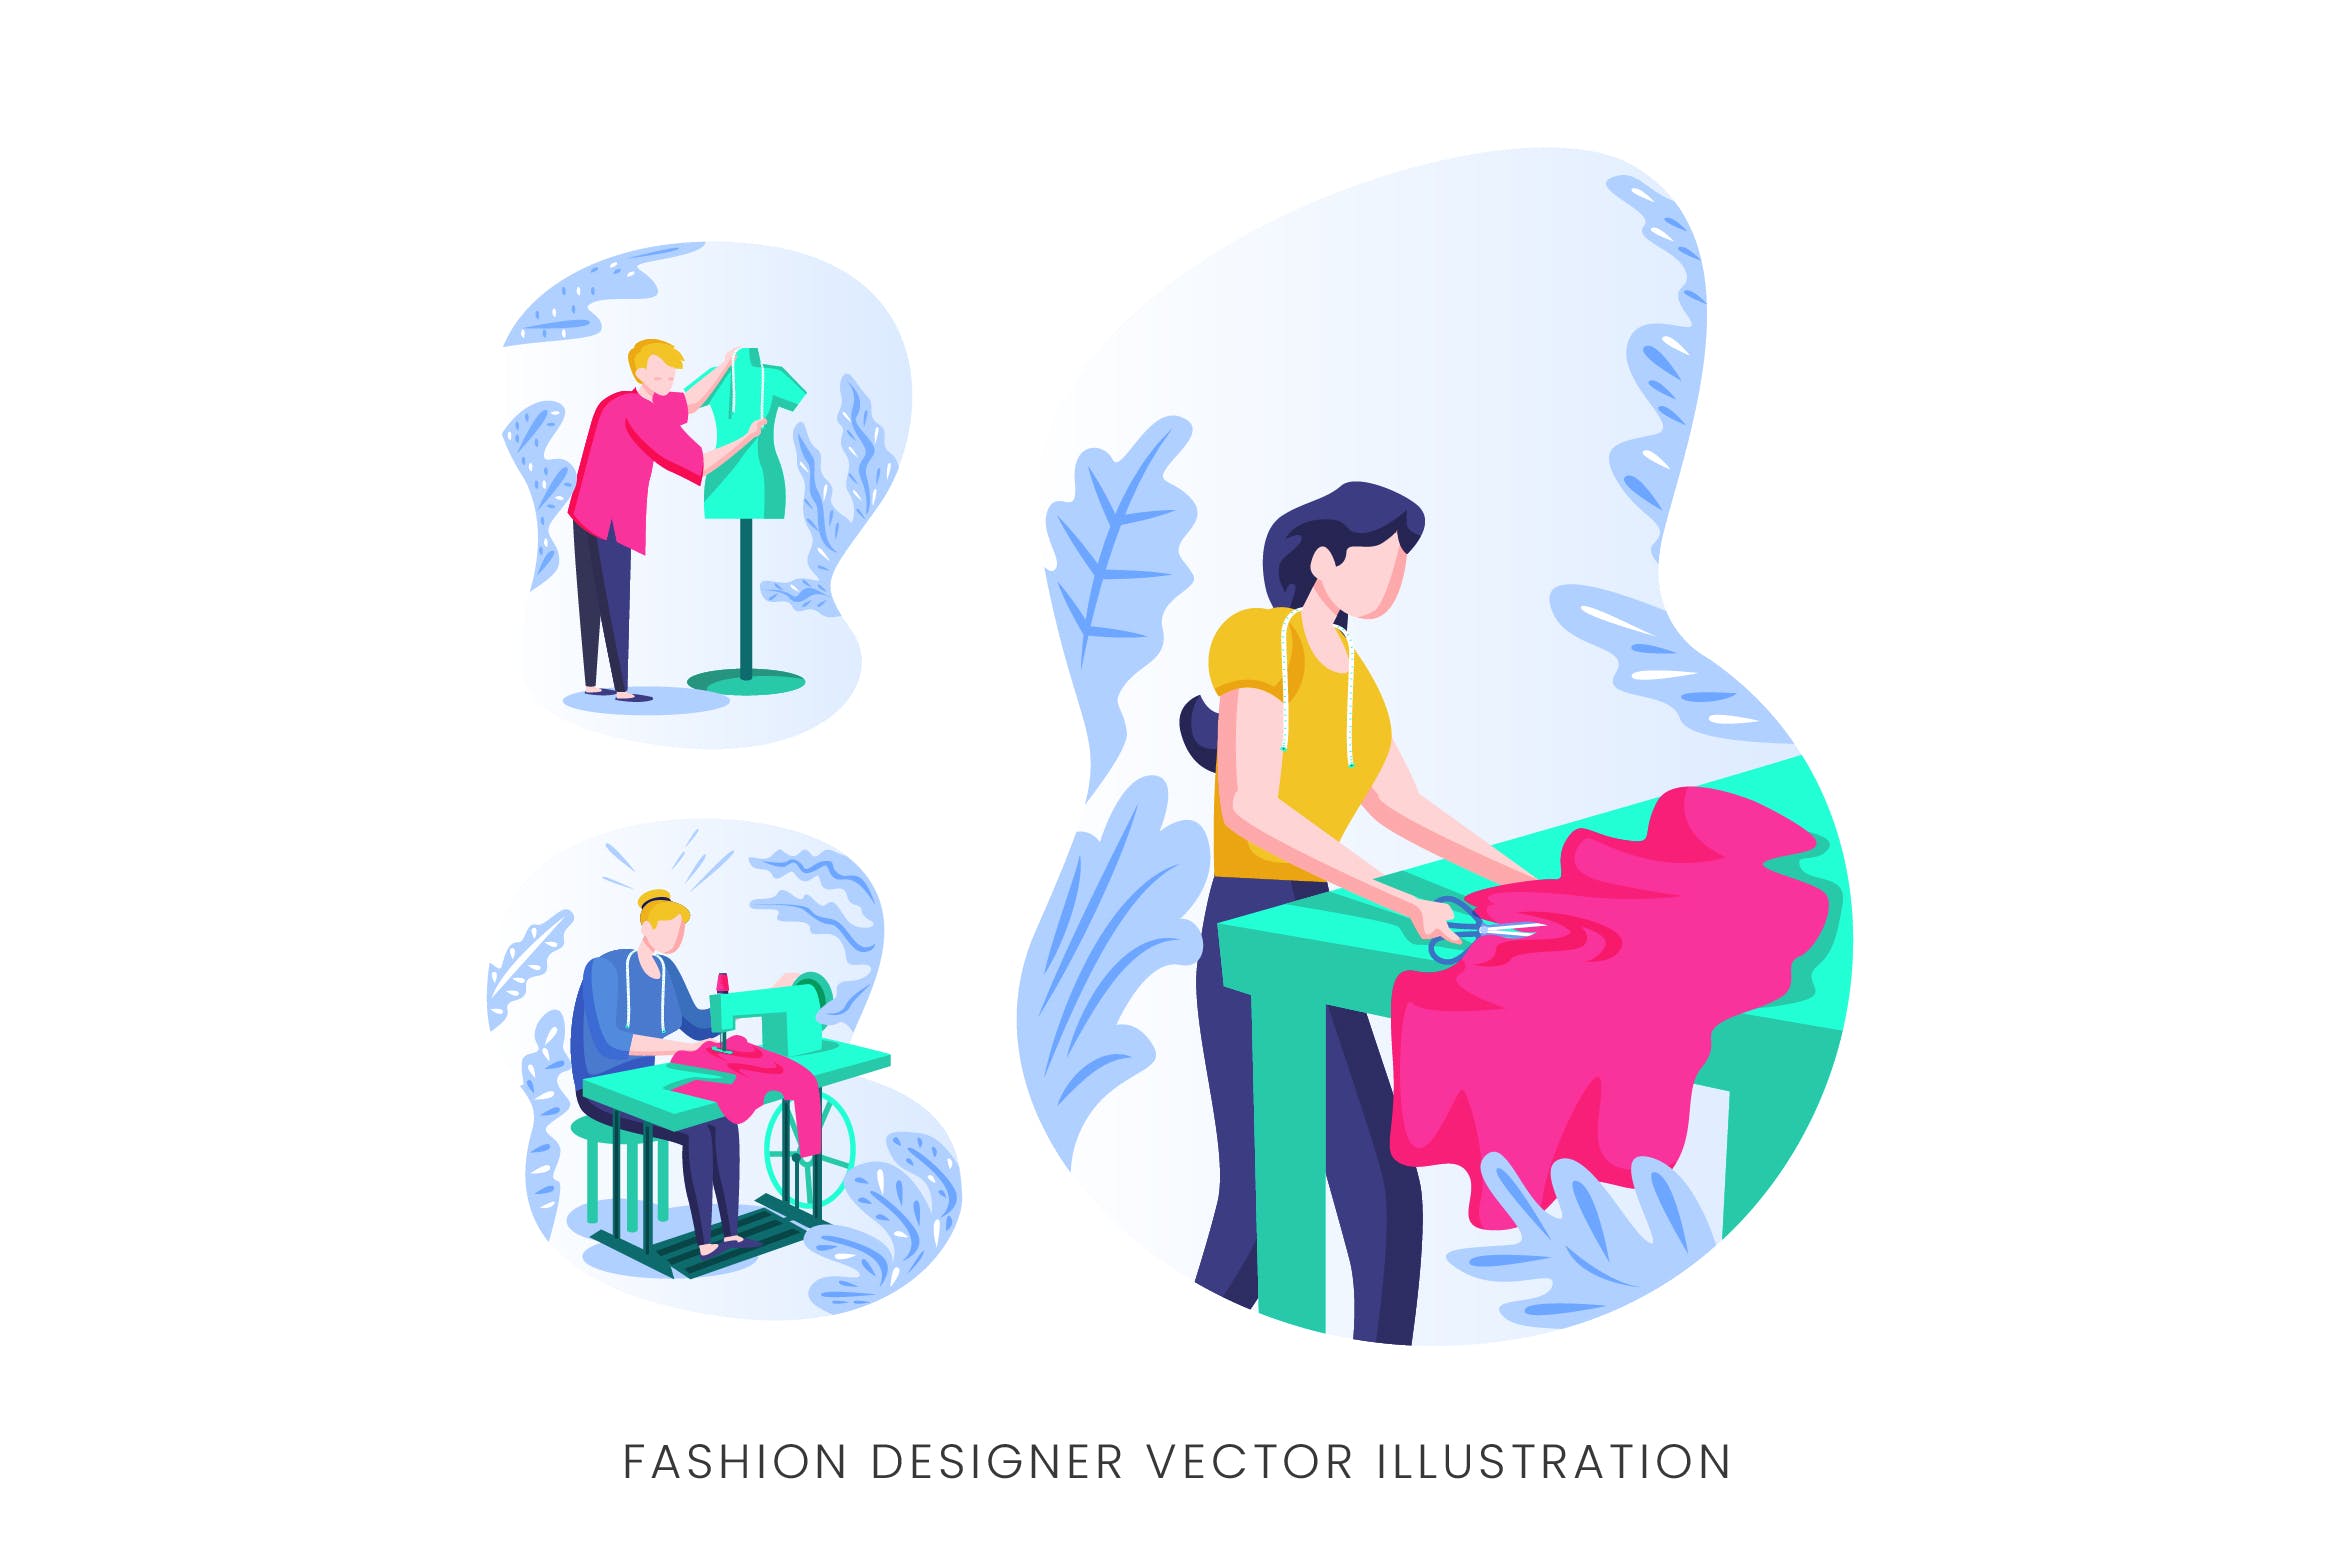 时装设计师人物形象矢量手绘手绘蚂蚁素材精选设计素材 Fashion Designer Vector Character Set插图